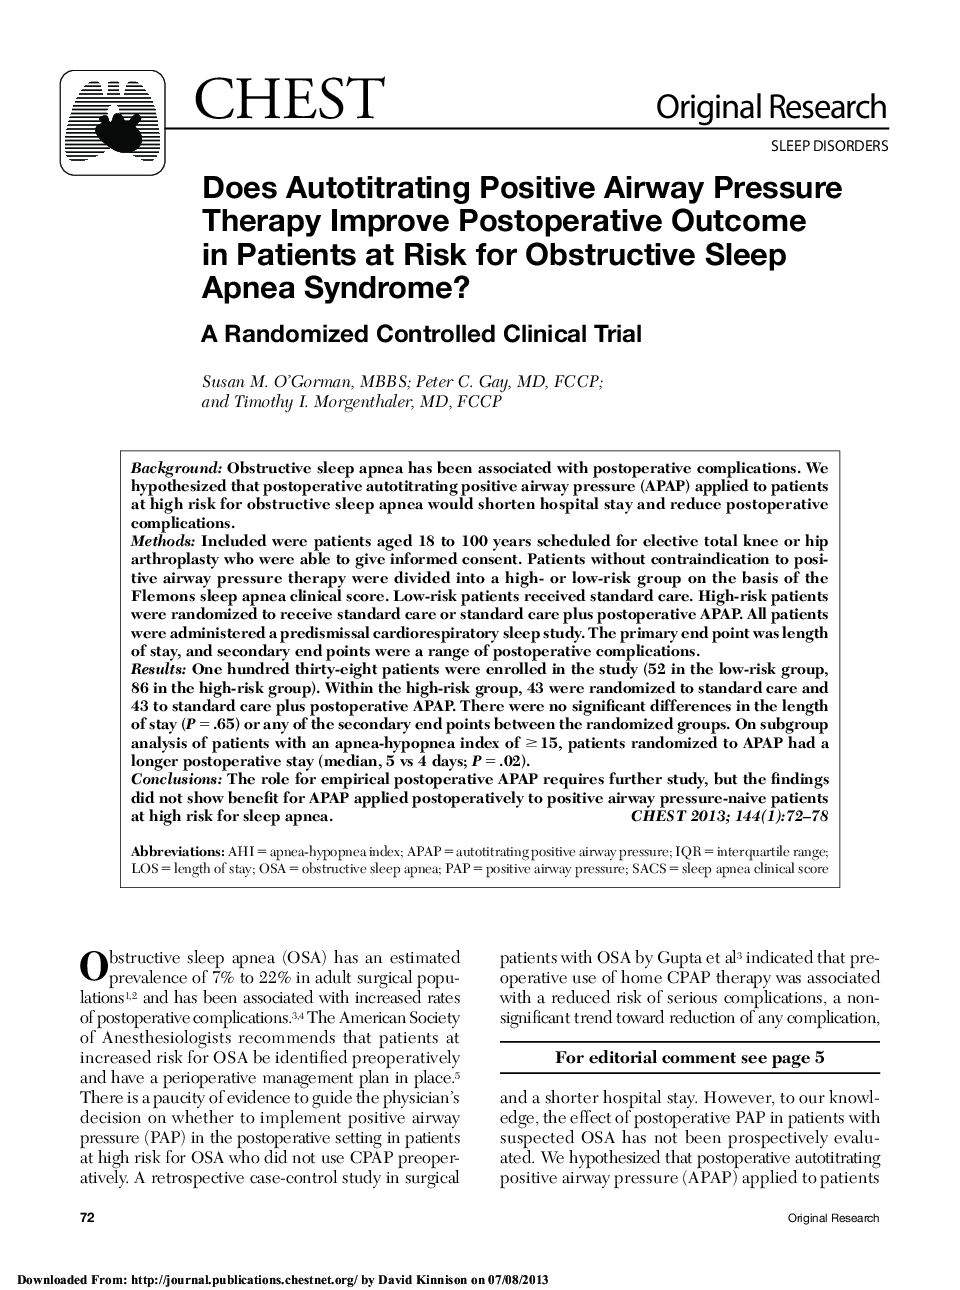 آیا درمان فشار مثبت هواپیما خودرو باعث بهبود نتایج پس از عمل در بیماران مبتلا به سندرم آپنه انسدادی می شود؟ 